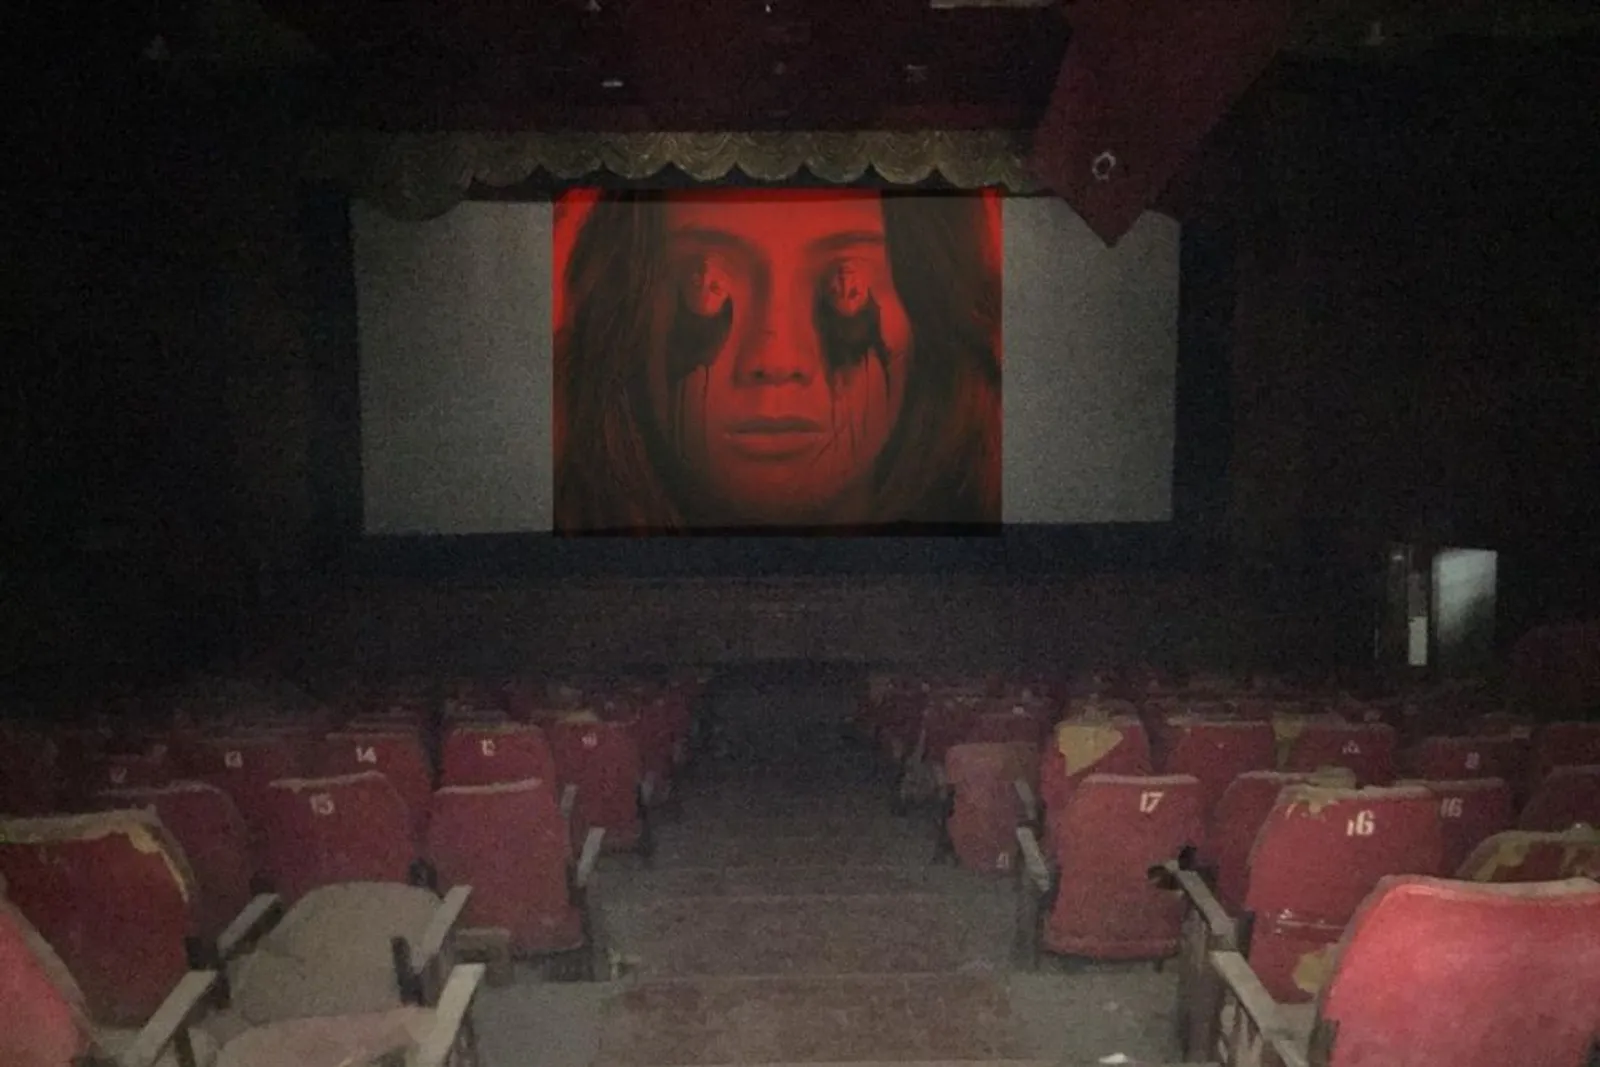 Joko Anwar Ajak Nobar di Bioskop Atoom, Ini Kisah Mistis di Baliknya